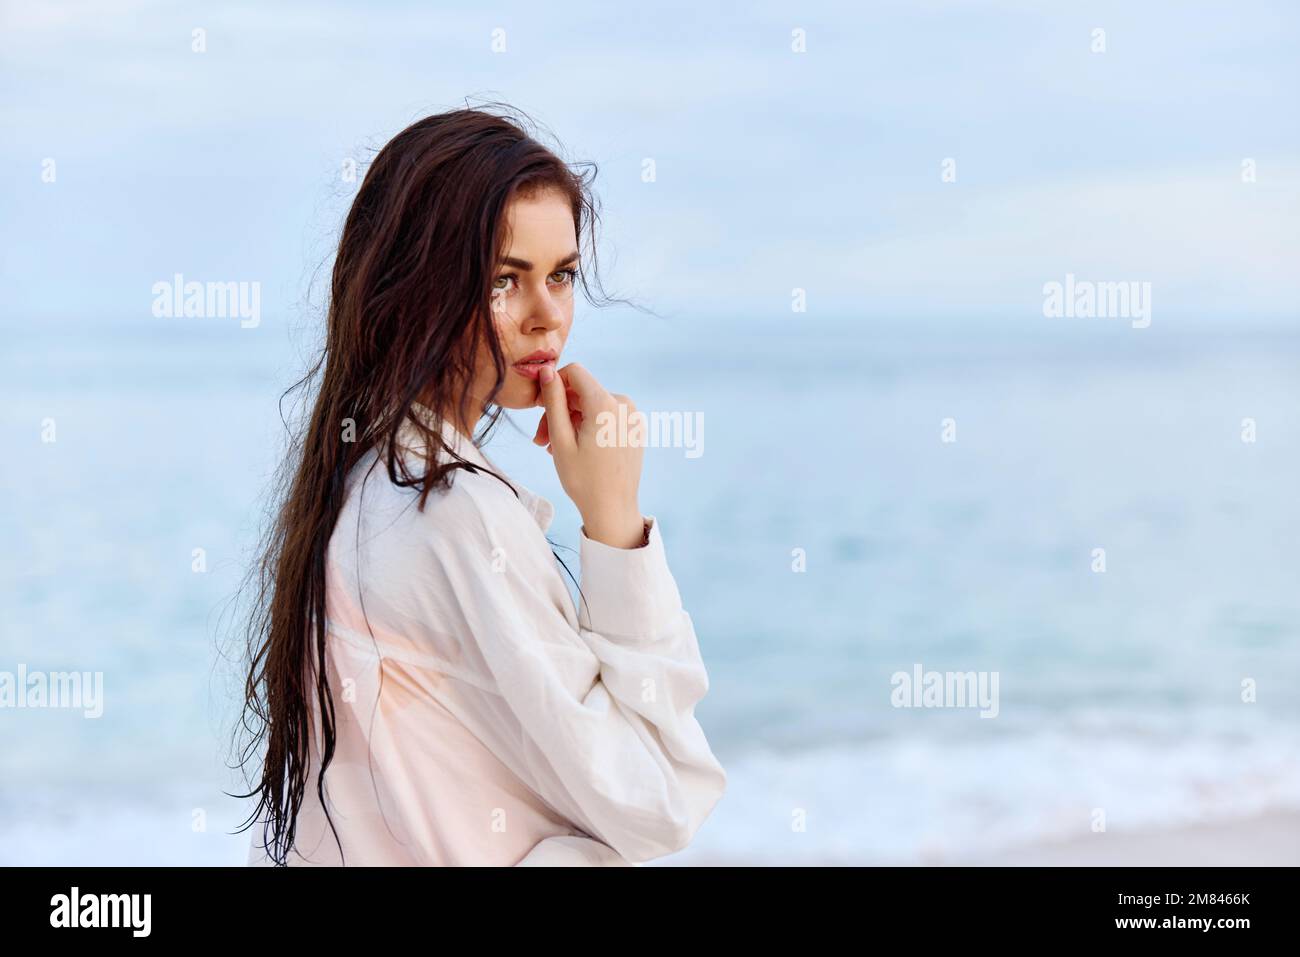 Portrait d'une belle femme pensive avec une peau bronzée dans une chemise de plage blanche avec des cheveux mouillés après avoir nagé sur la plage océan coucher de soleil lumière avec des nuages Banque D'Images